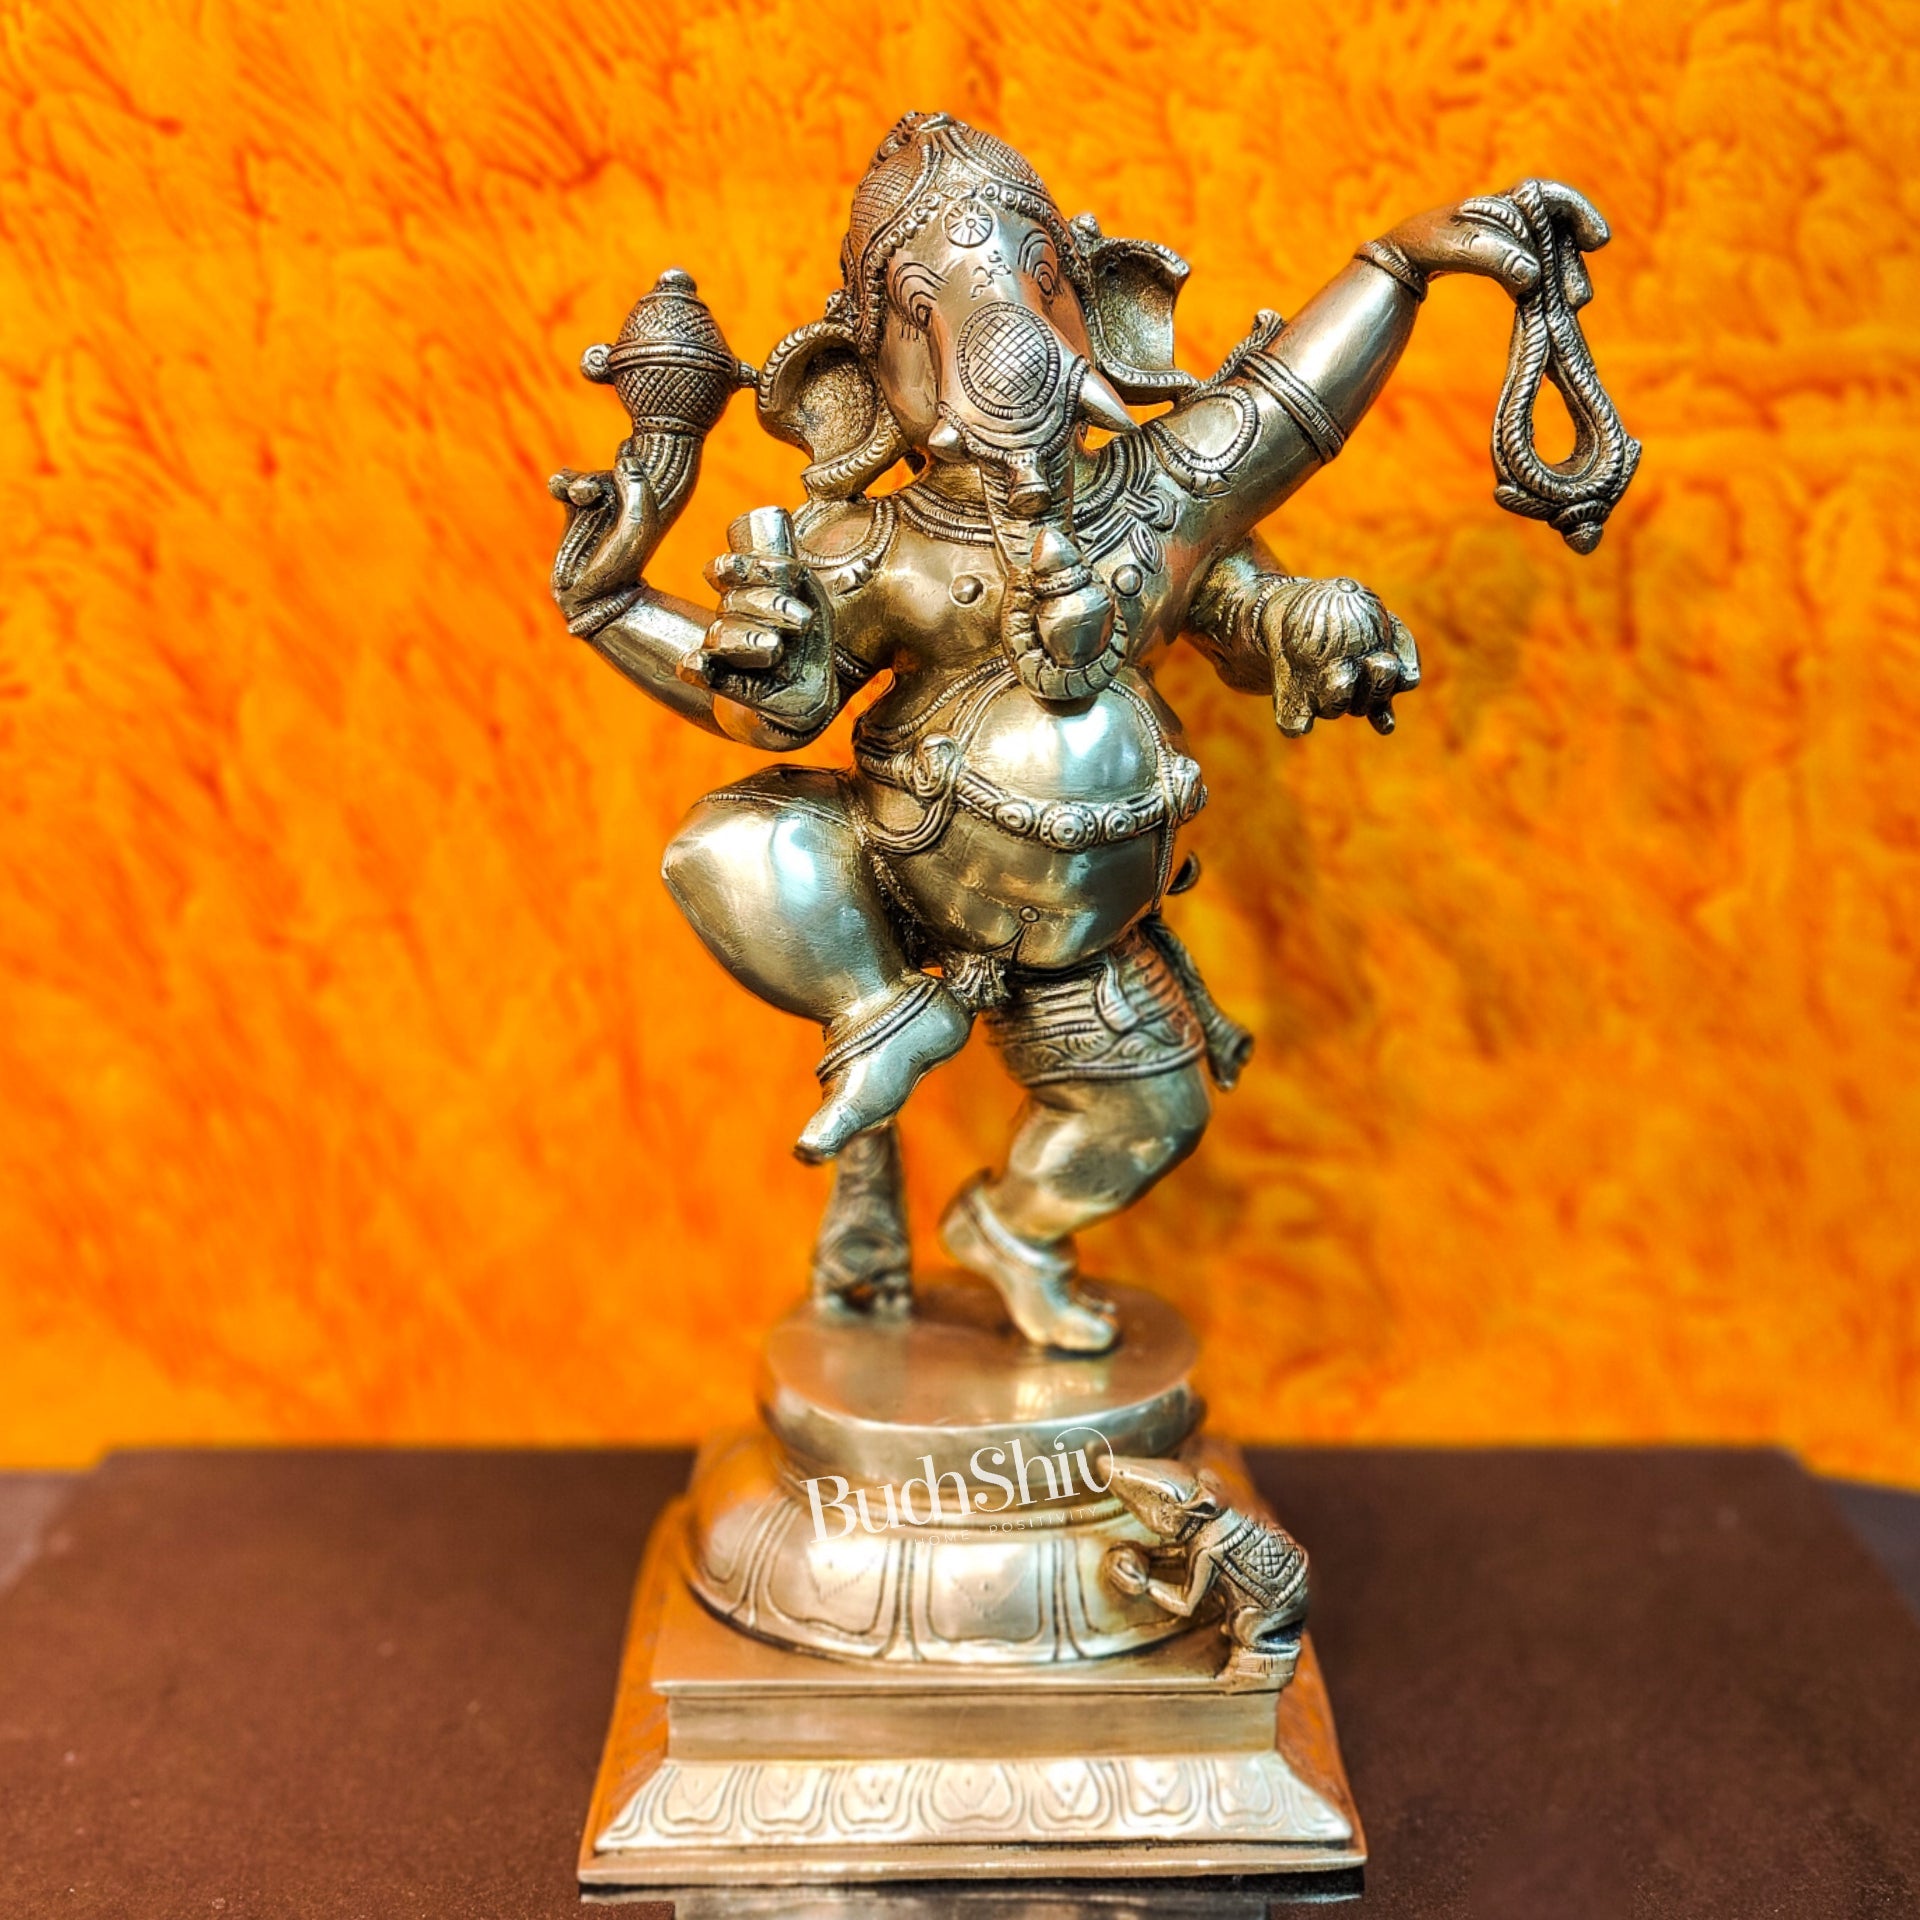 http://budhshiv.com/cdn/shop/products/brass-dancing-ganesha-statue-17-bdgs1-718338.jpg?v=1707024036